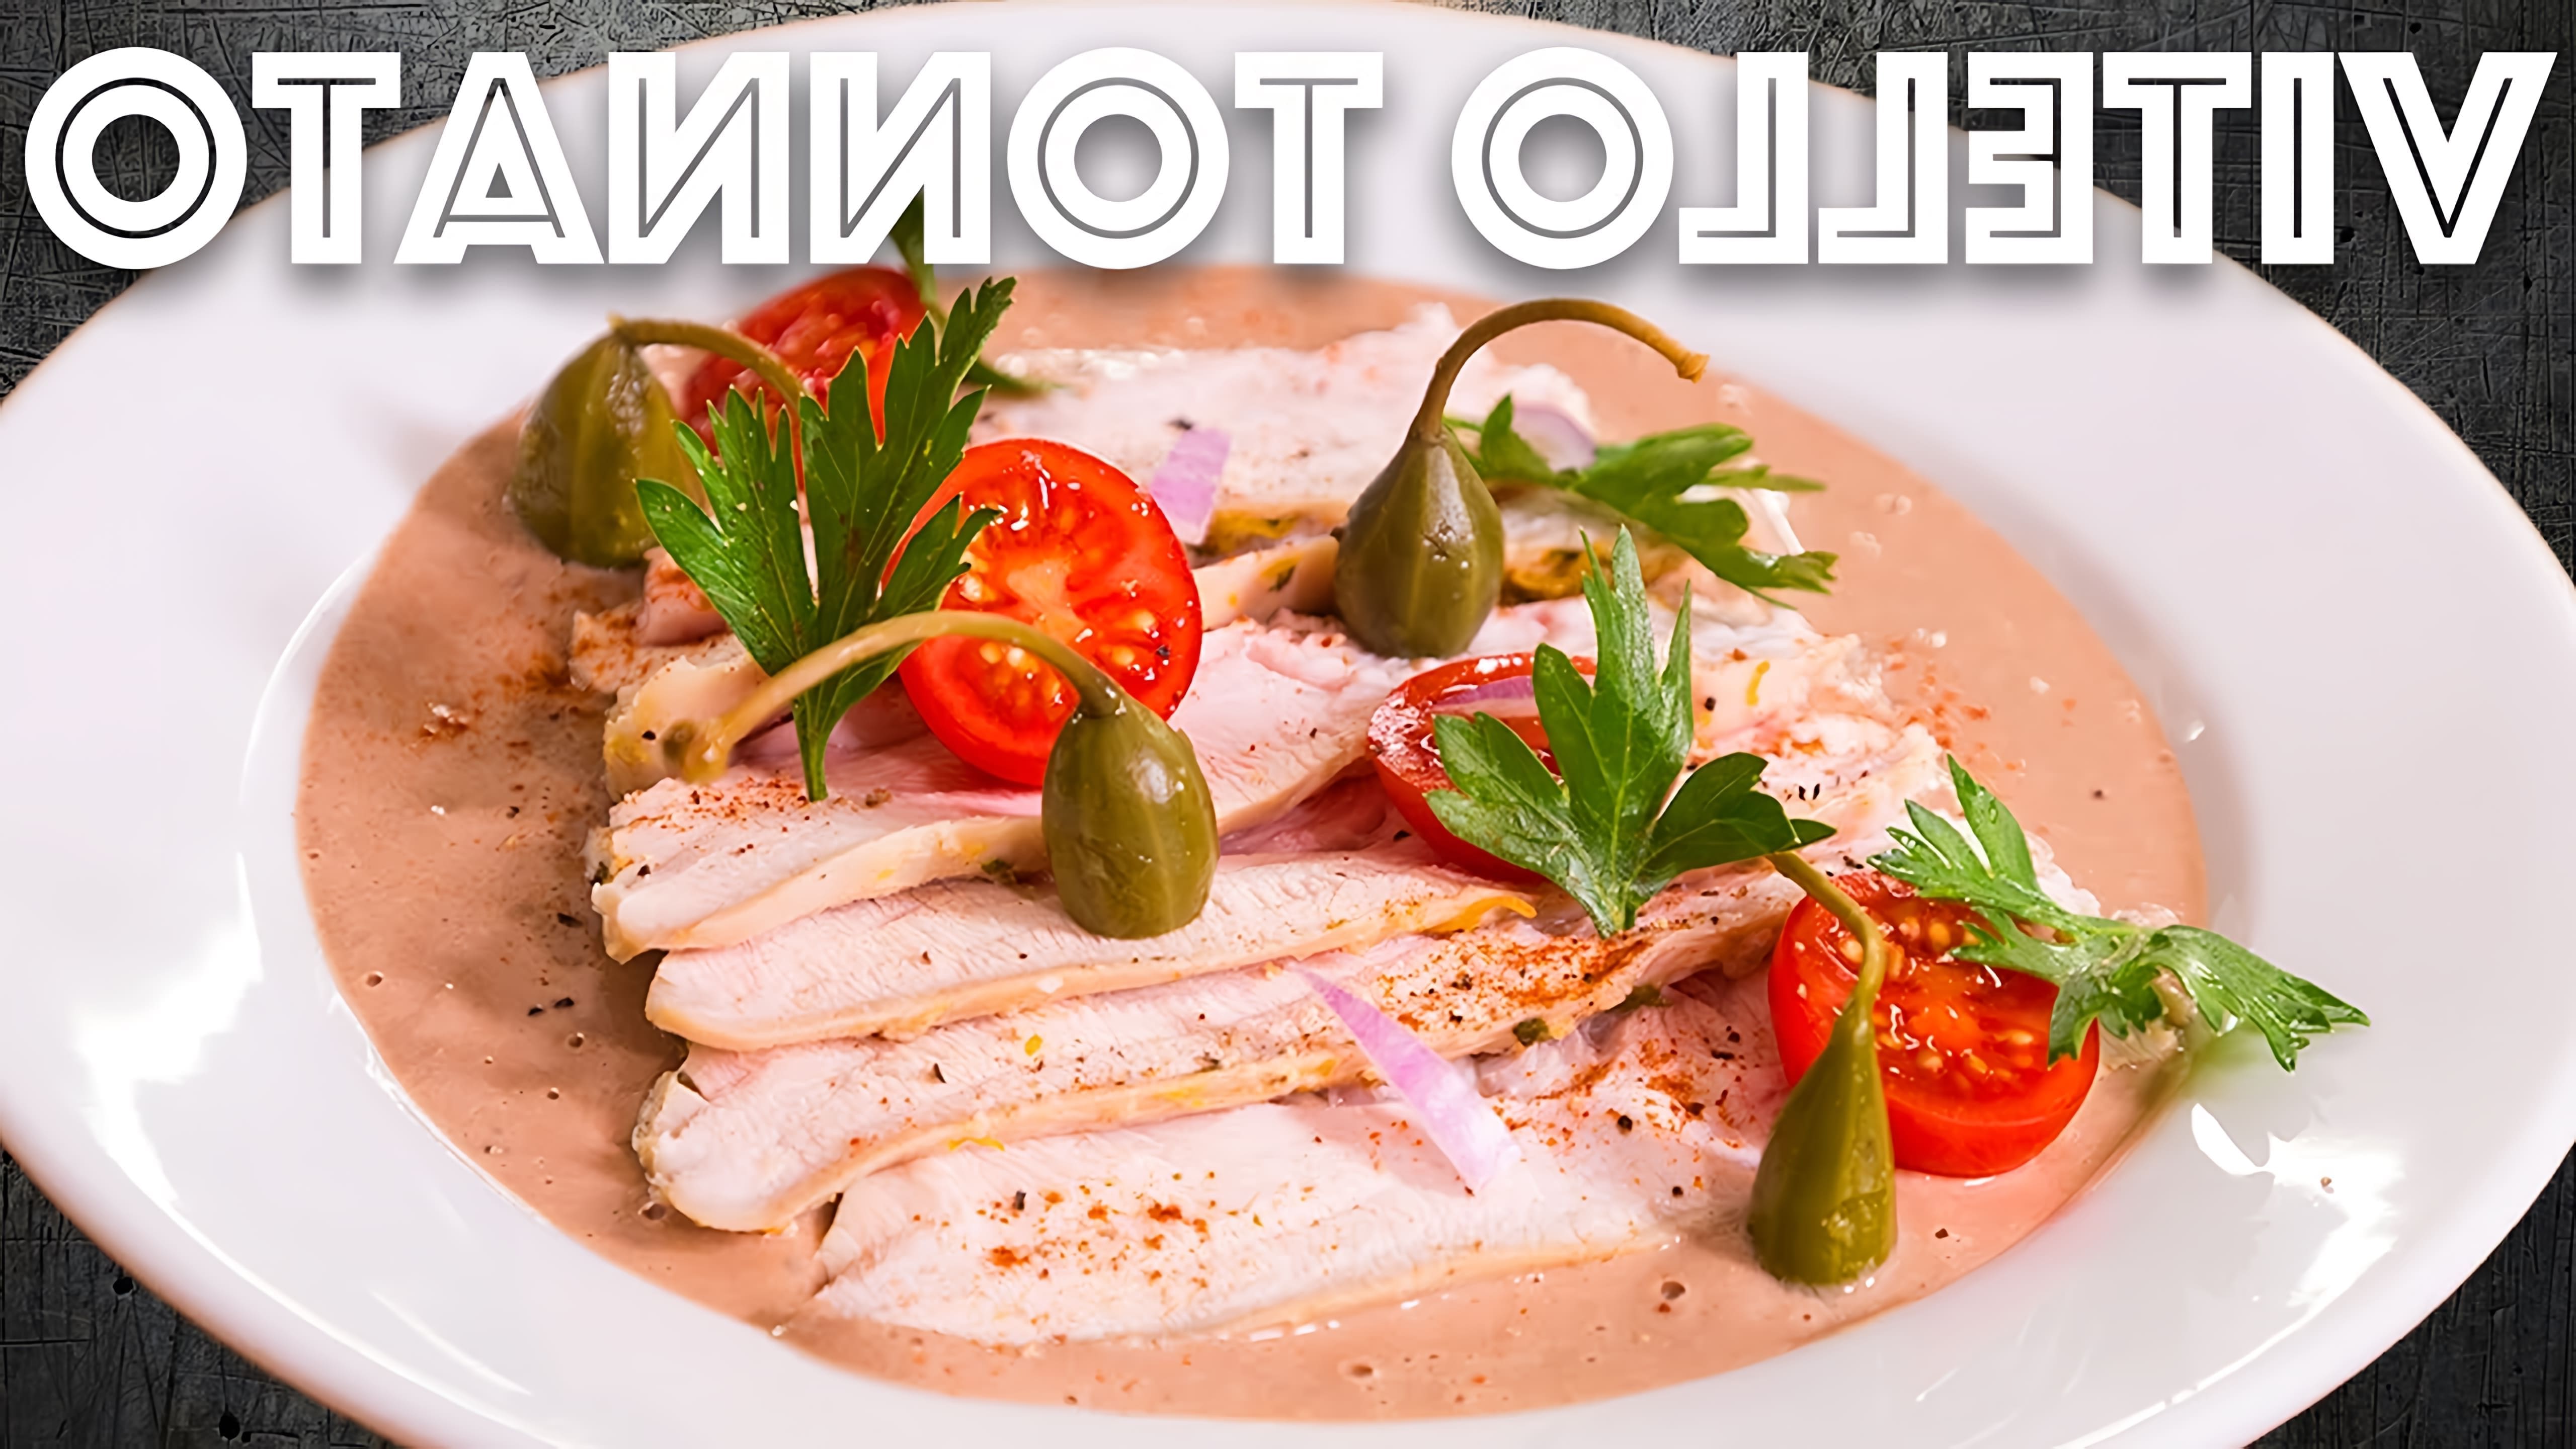 В этом видео рассказывается о приготовлении блюда Vitello Tonnato, которое представляет собой индейку, запеченную с соусом из тунца